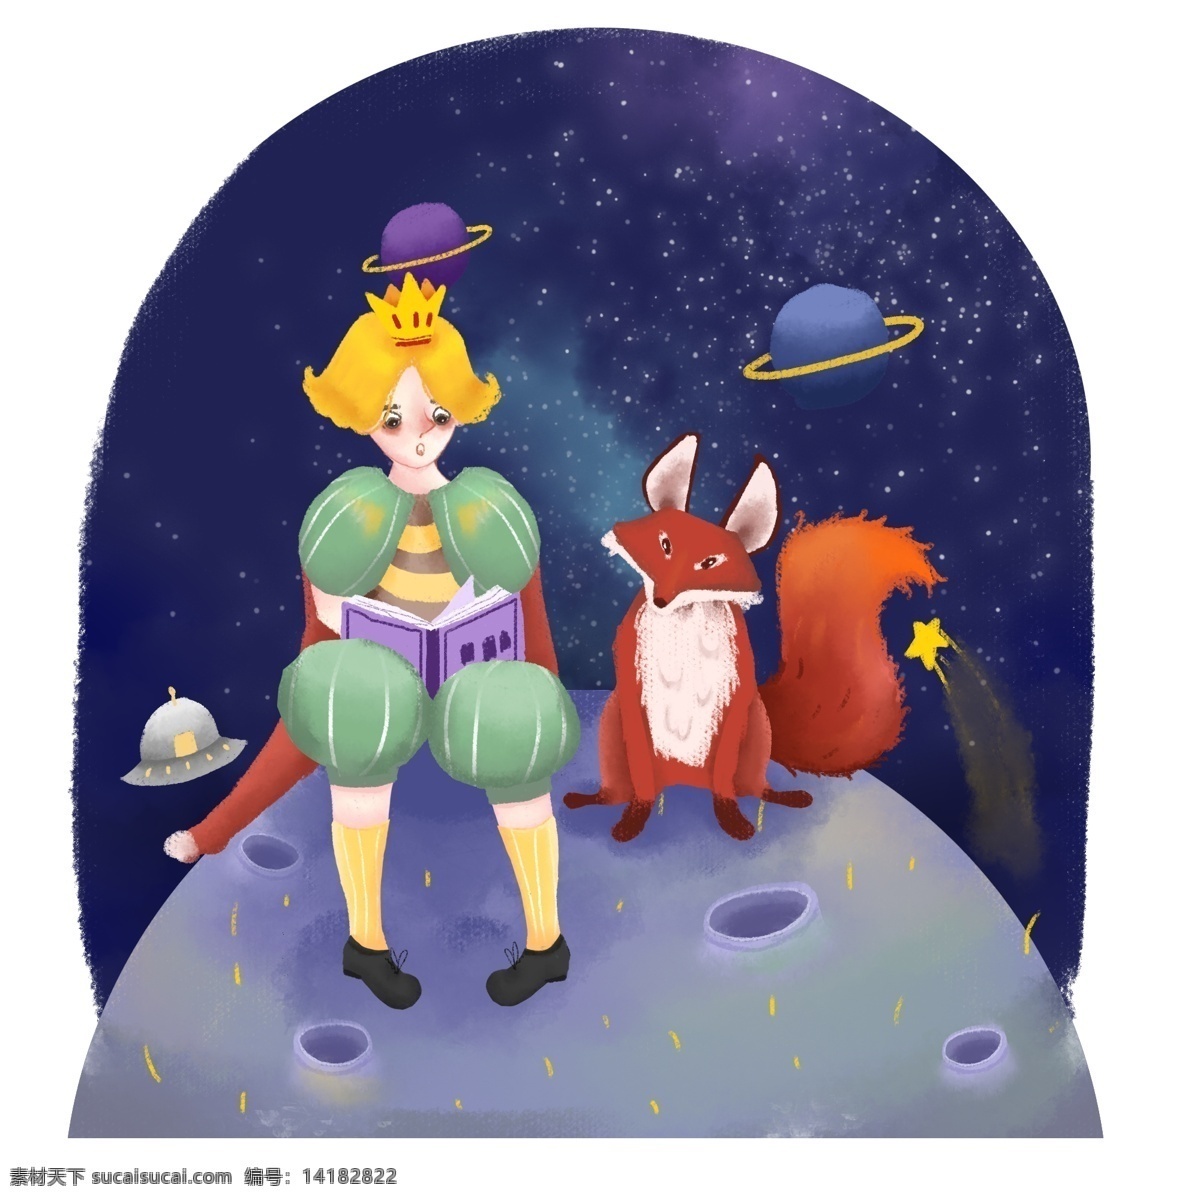 西方 王子 手绘 卡通 可爱 治愈 插画 狐狸 玫瑰 星球 卡通可爱 动物 夜晚 西方王子 人物男孩